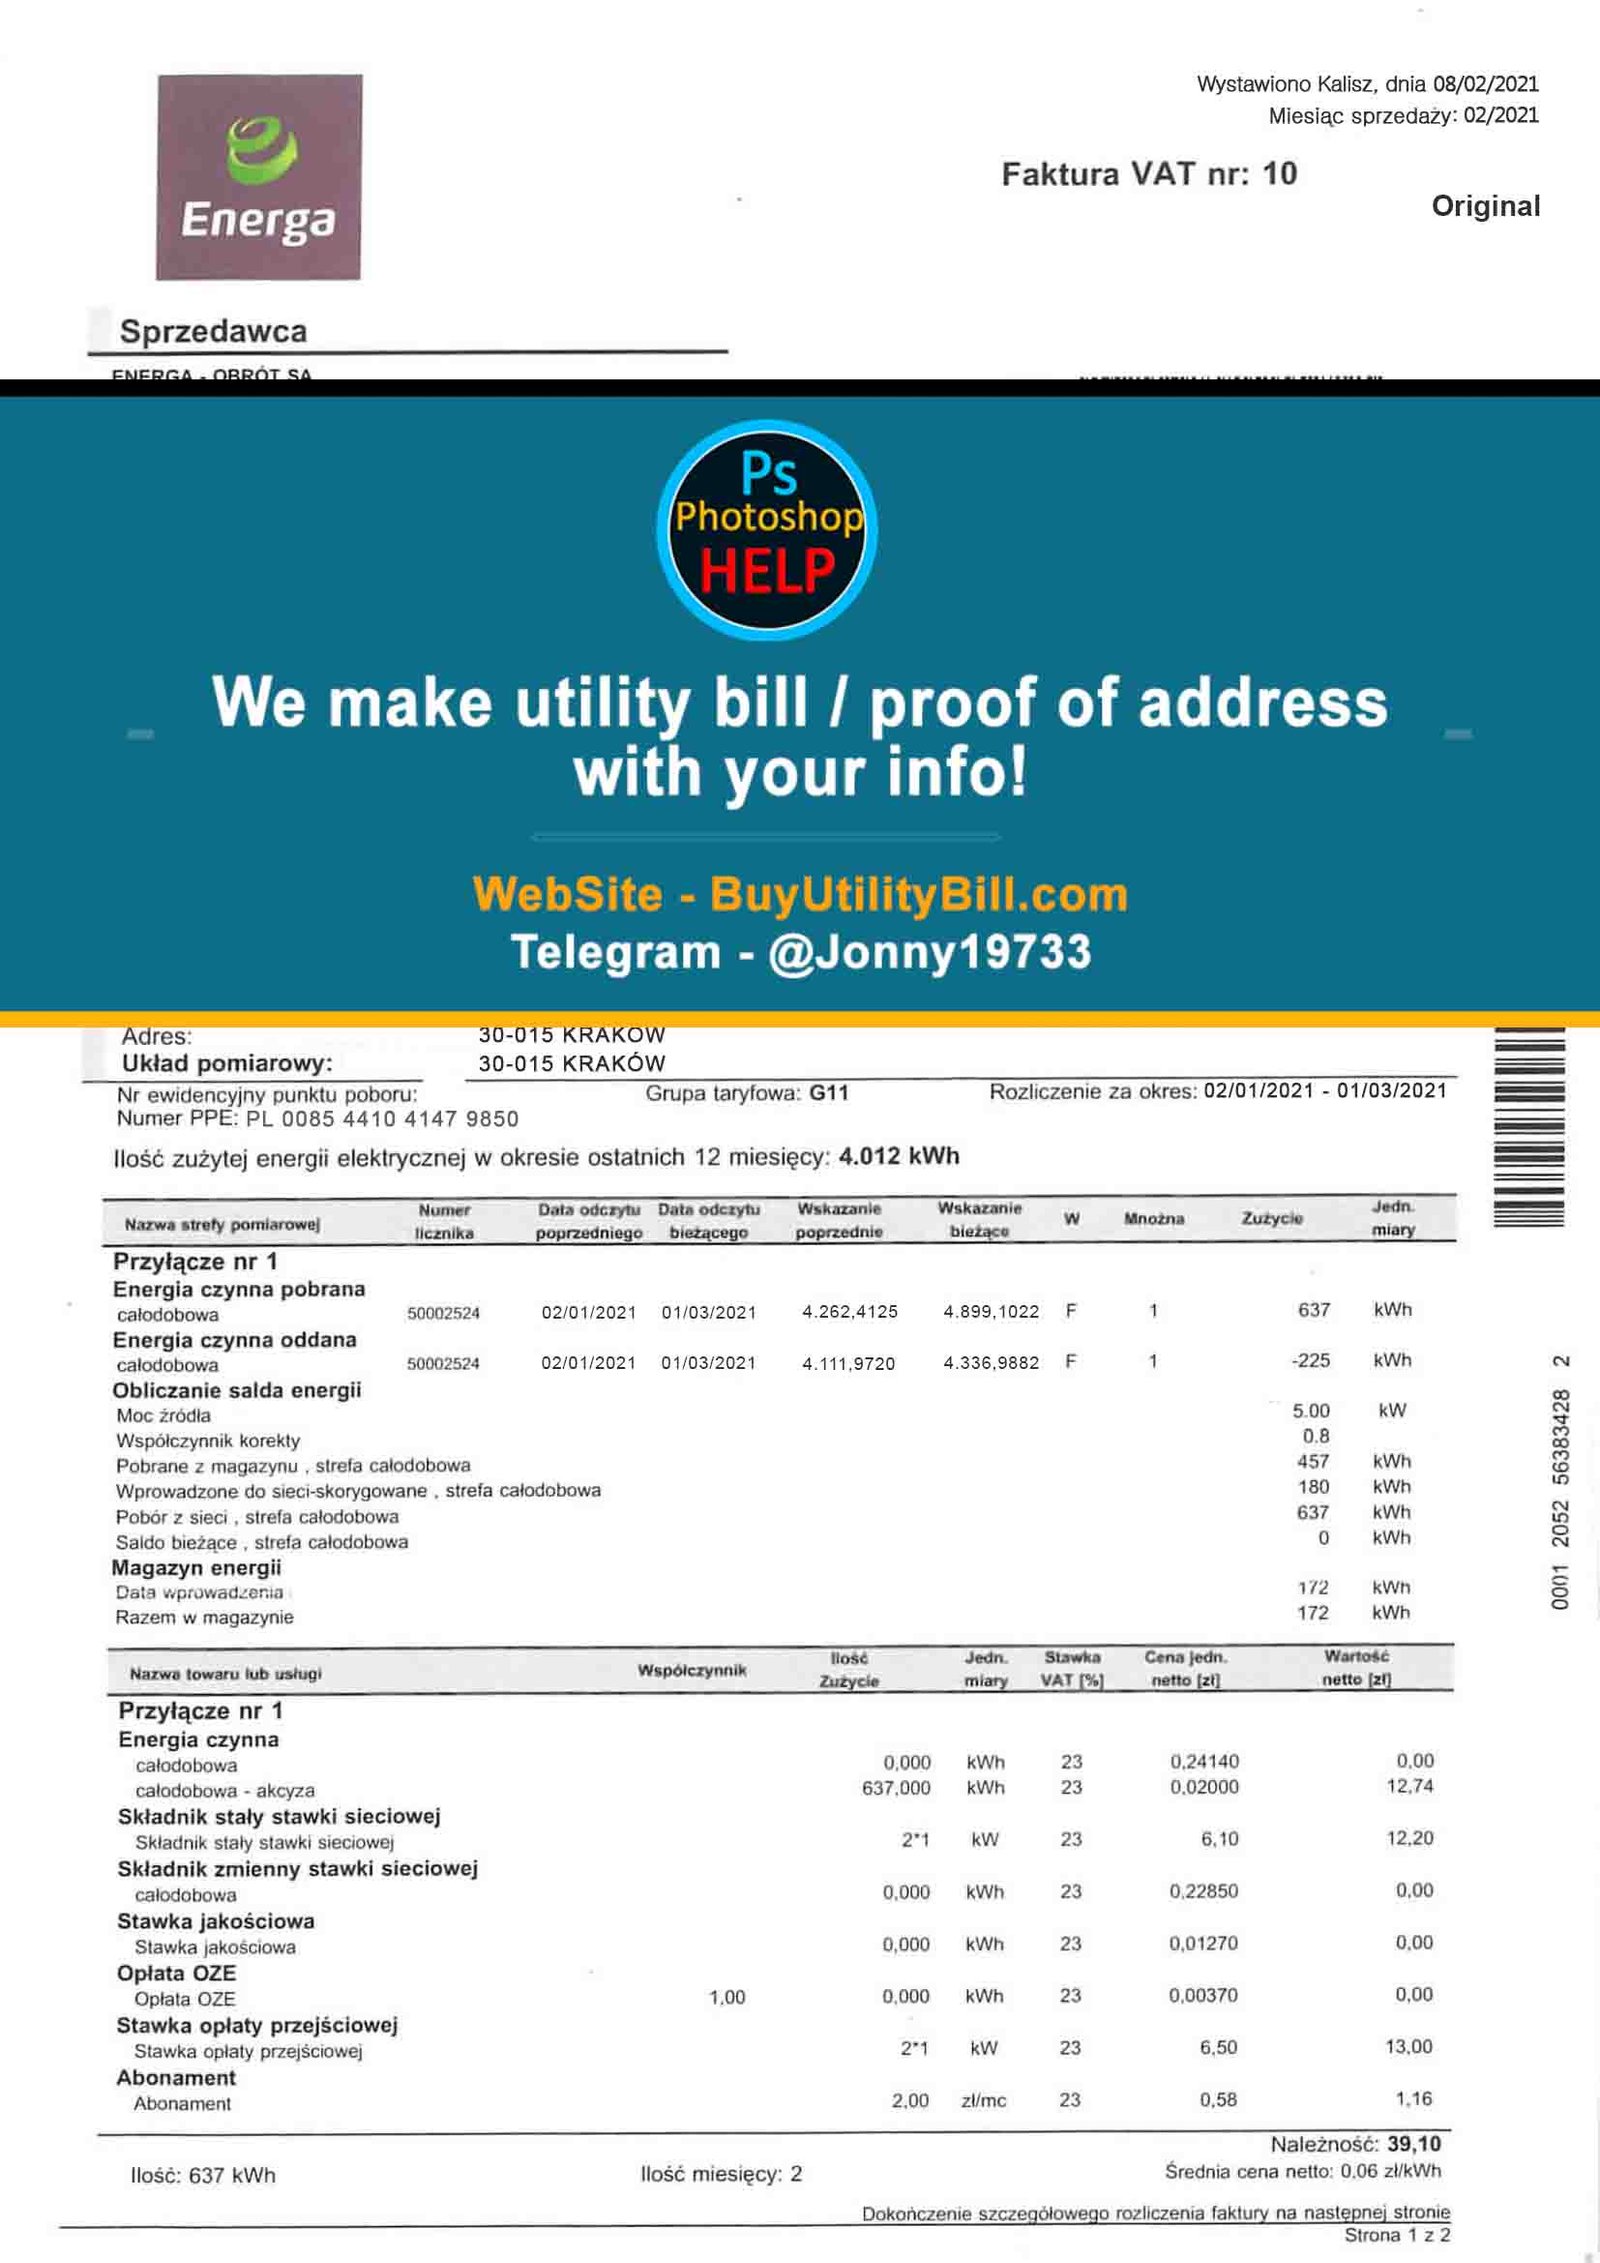 Poland Energia Fake Utility Bill Energa Sample Fake utility bill